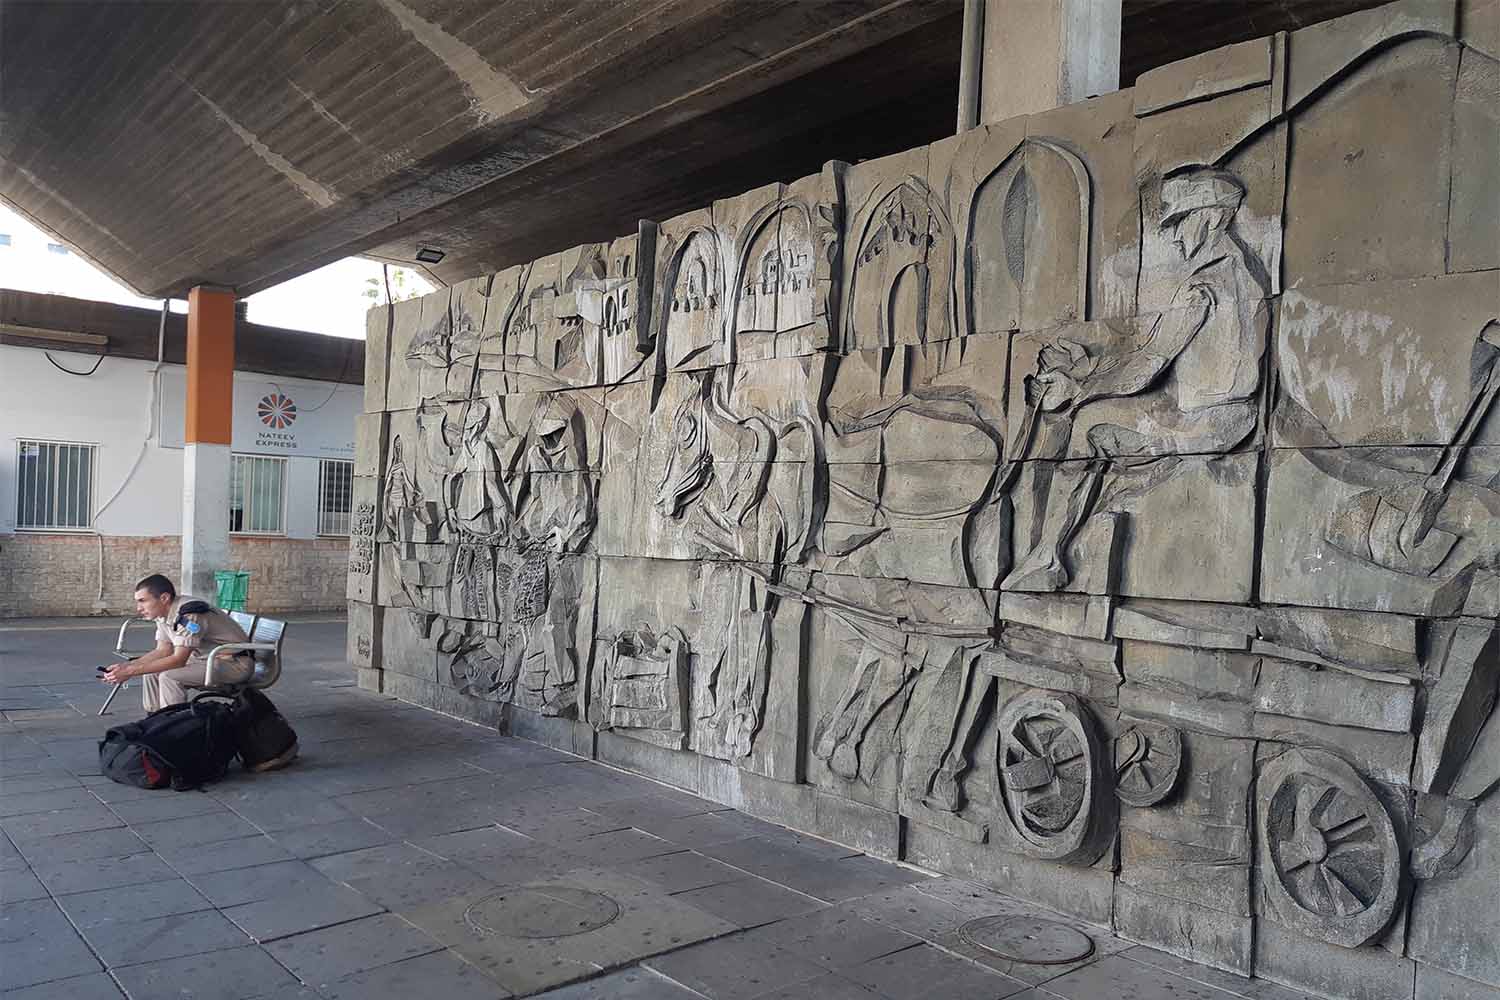 קטע מקיר האמנות הייחודי בתחנה המרכזית בעכו. מחווה של האמן גרשון קניספל לקבוצת "זיפזיף" (צילום: מיכאל יעקובסון)